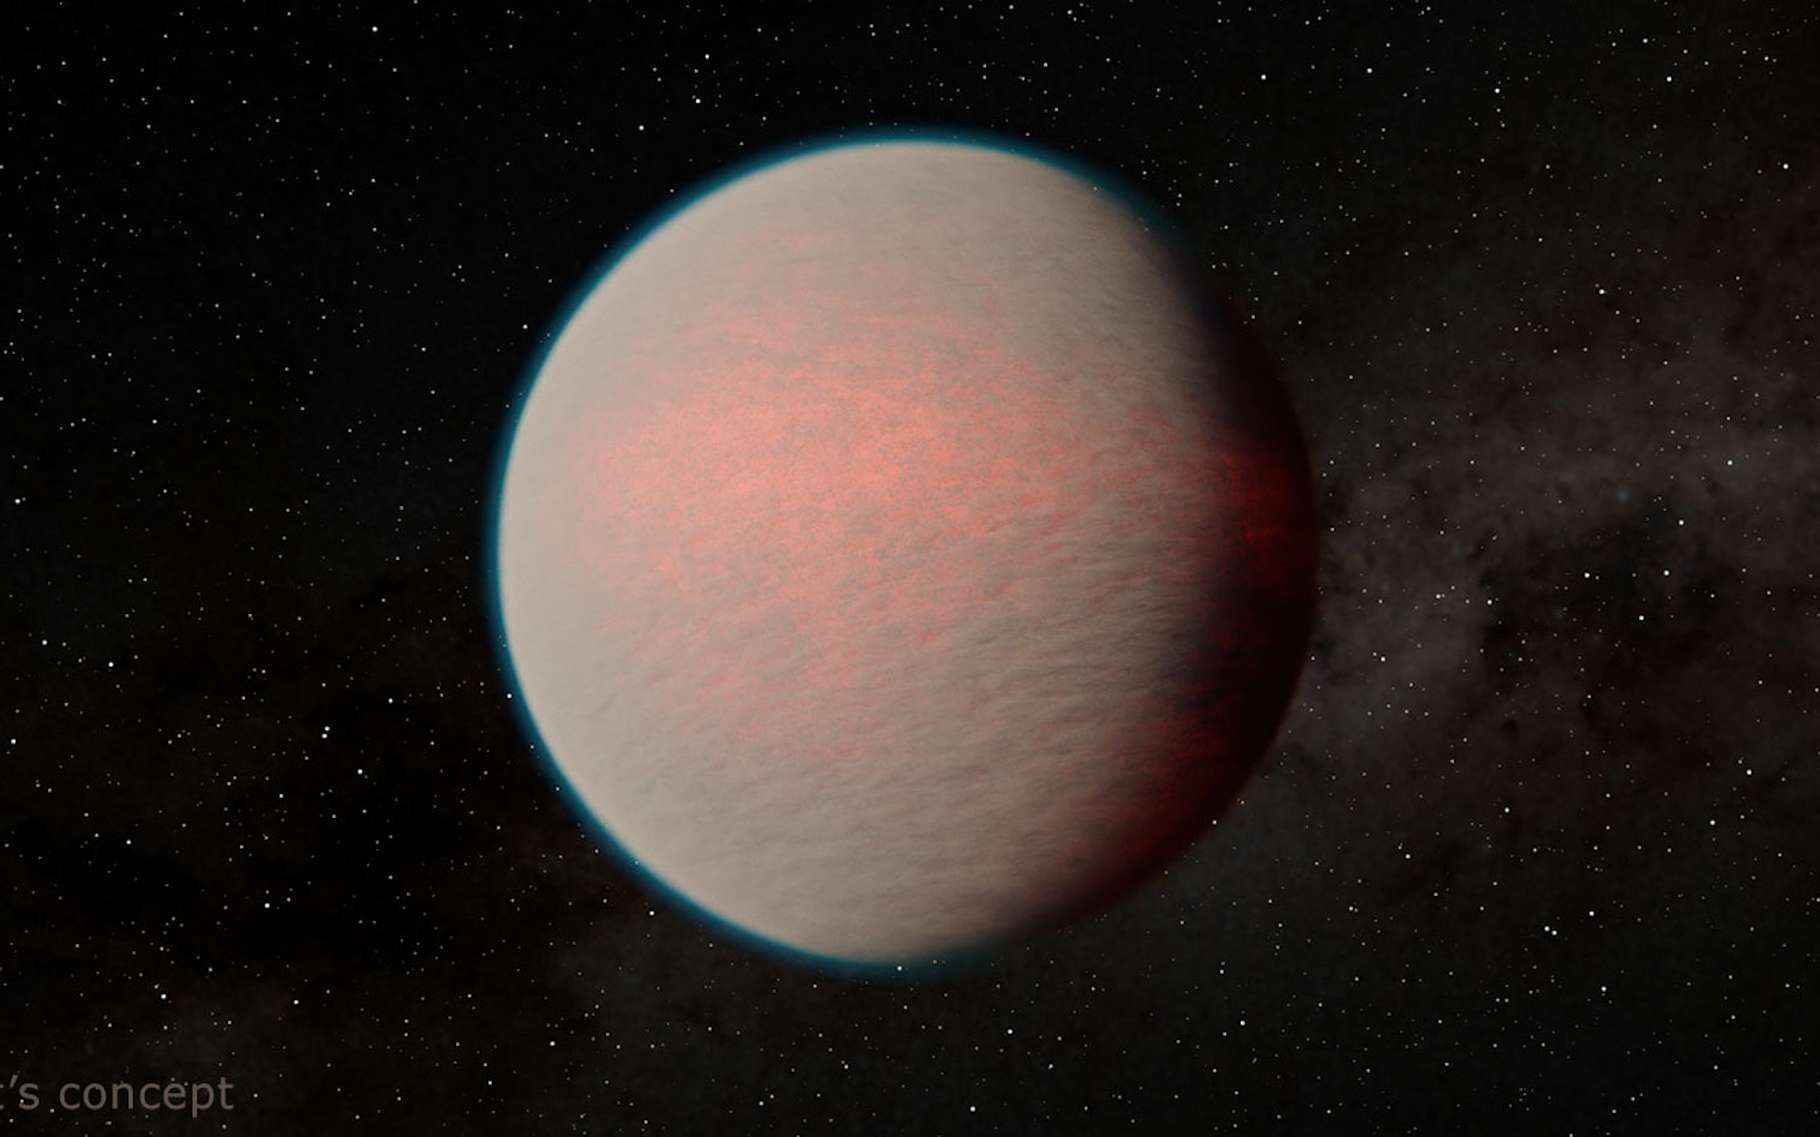 Le télescope James-Webb lève le voile sur cette exoplanète mystérieuse